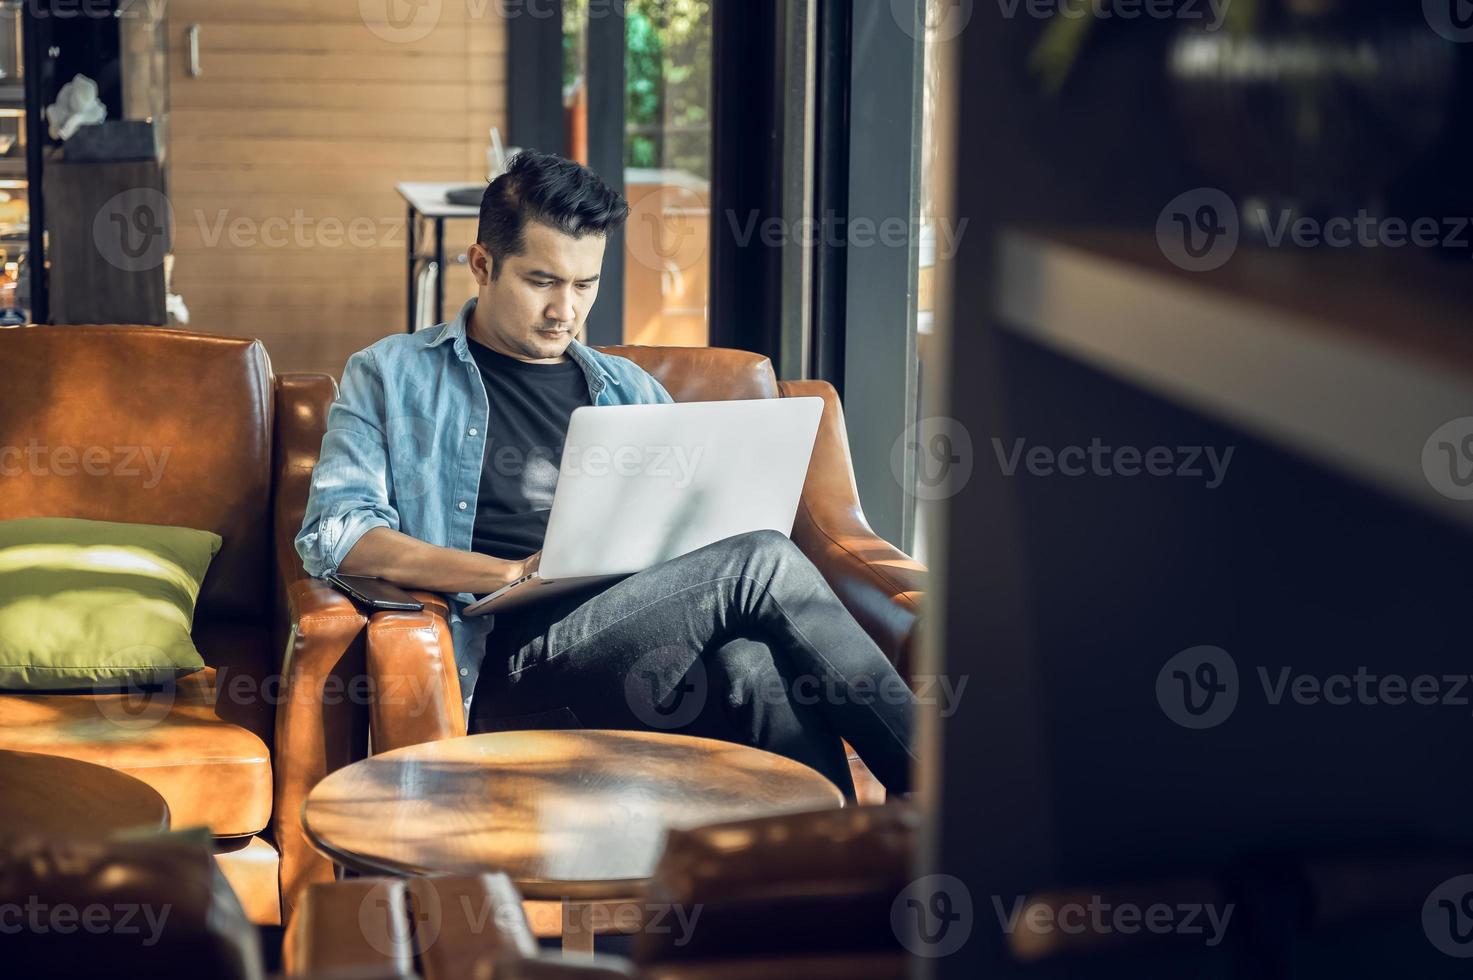 pigiste asiatique en blazer avec ordinateur portable dans un café près de la fenêtre profession est blogueur, traducteur indépendant et écrivain. traducteur indépendant travaille dans un café. apprentissage en ligne photo